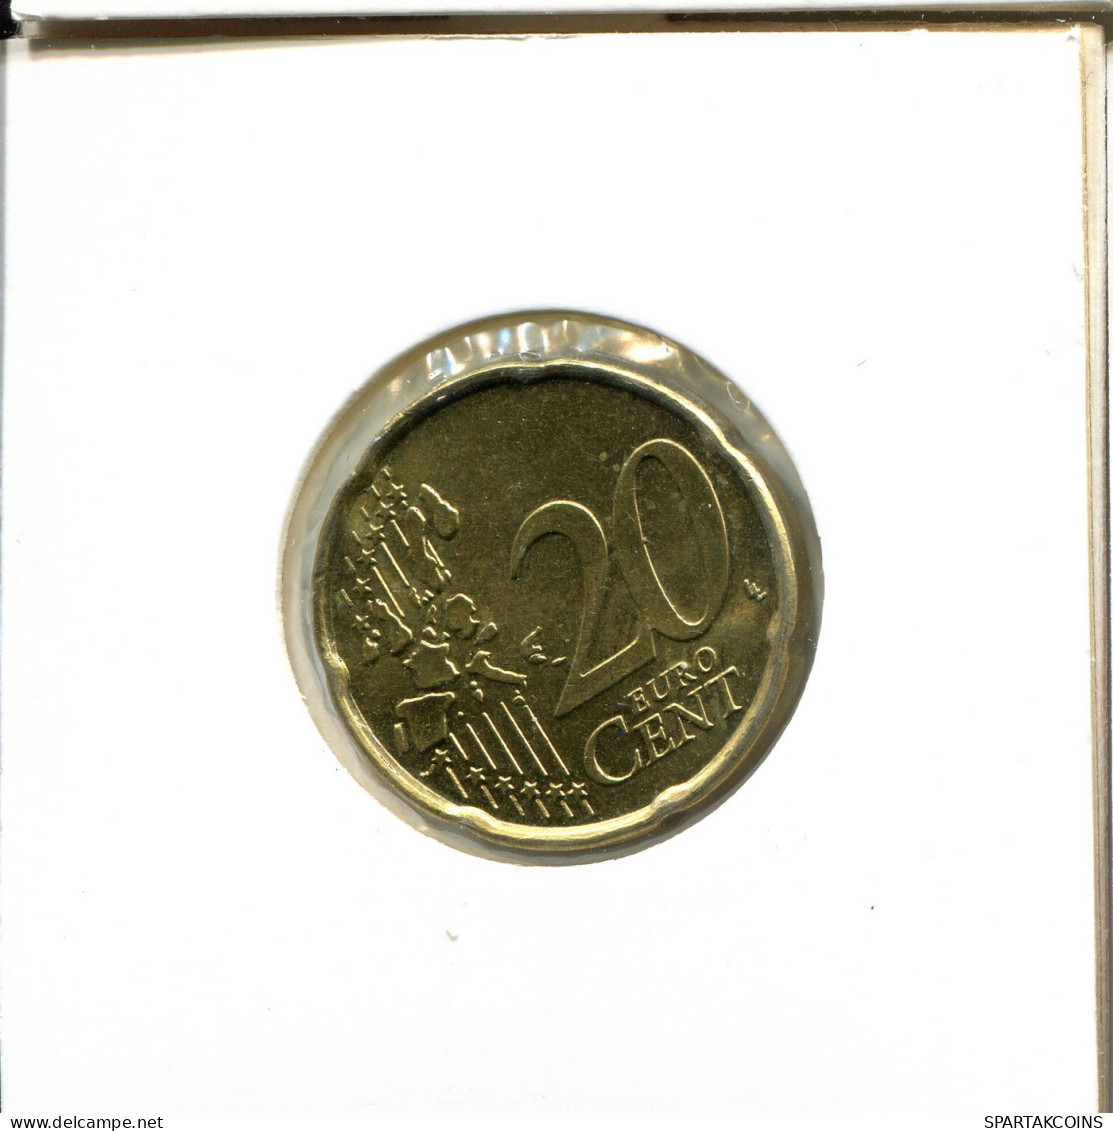 20 EURO CENTS 2006 BELGIUM Coin #EU052.U.A - Belgique